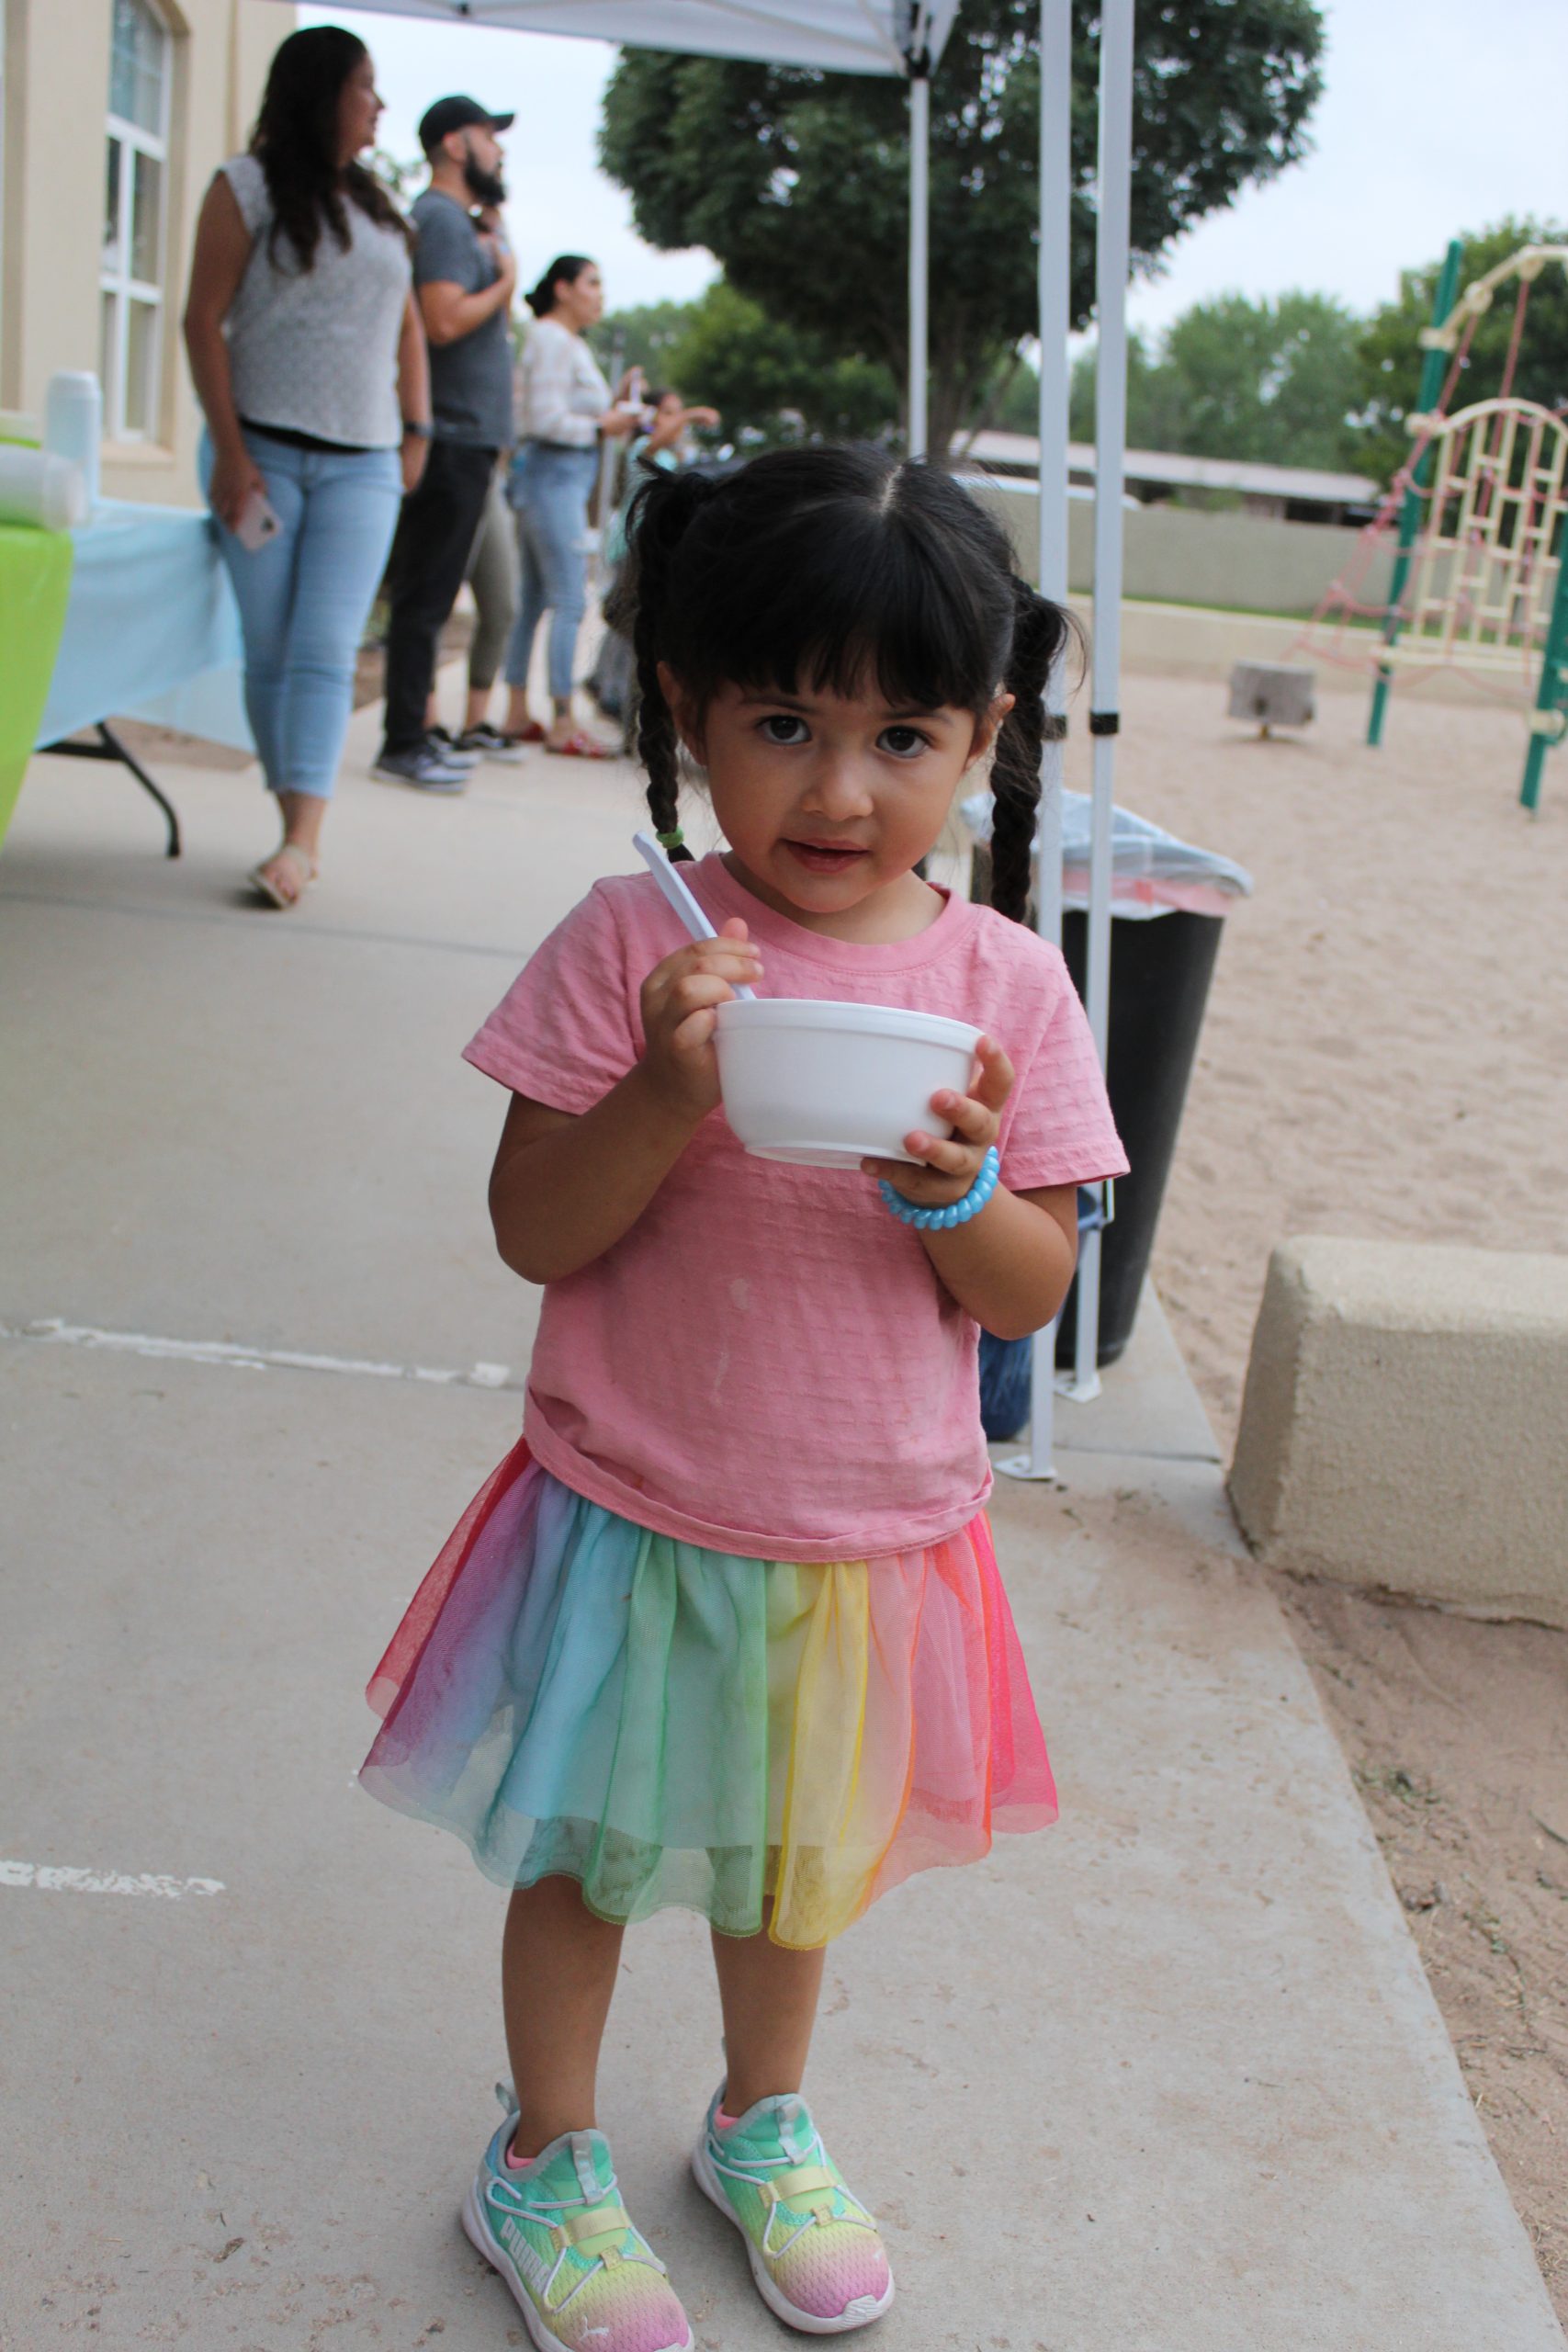 little girl eating ice cream